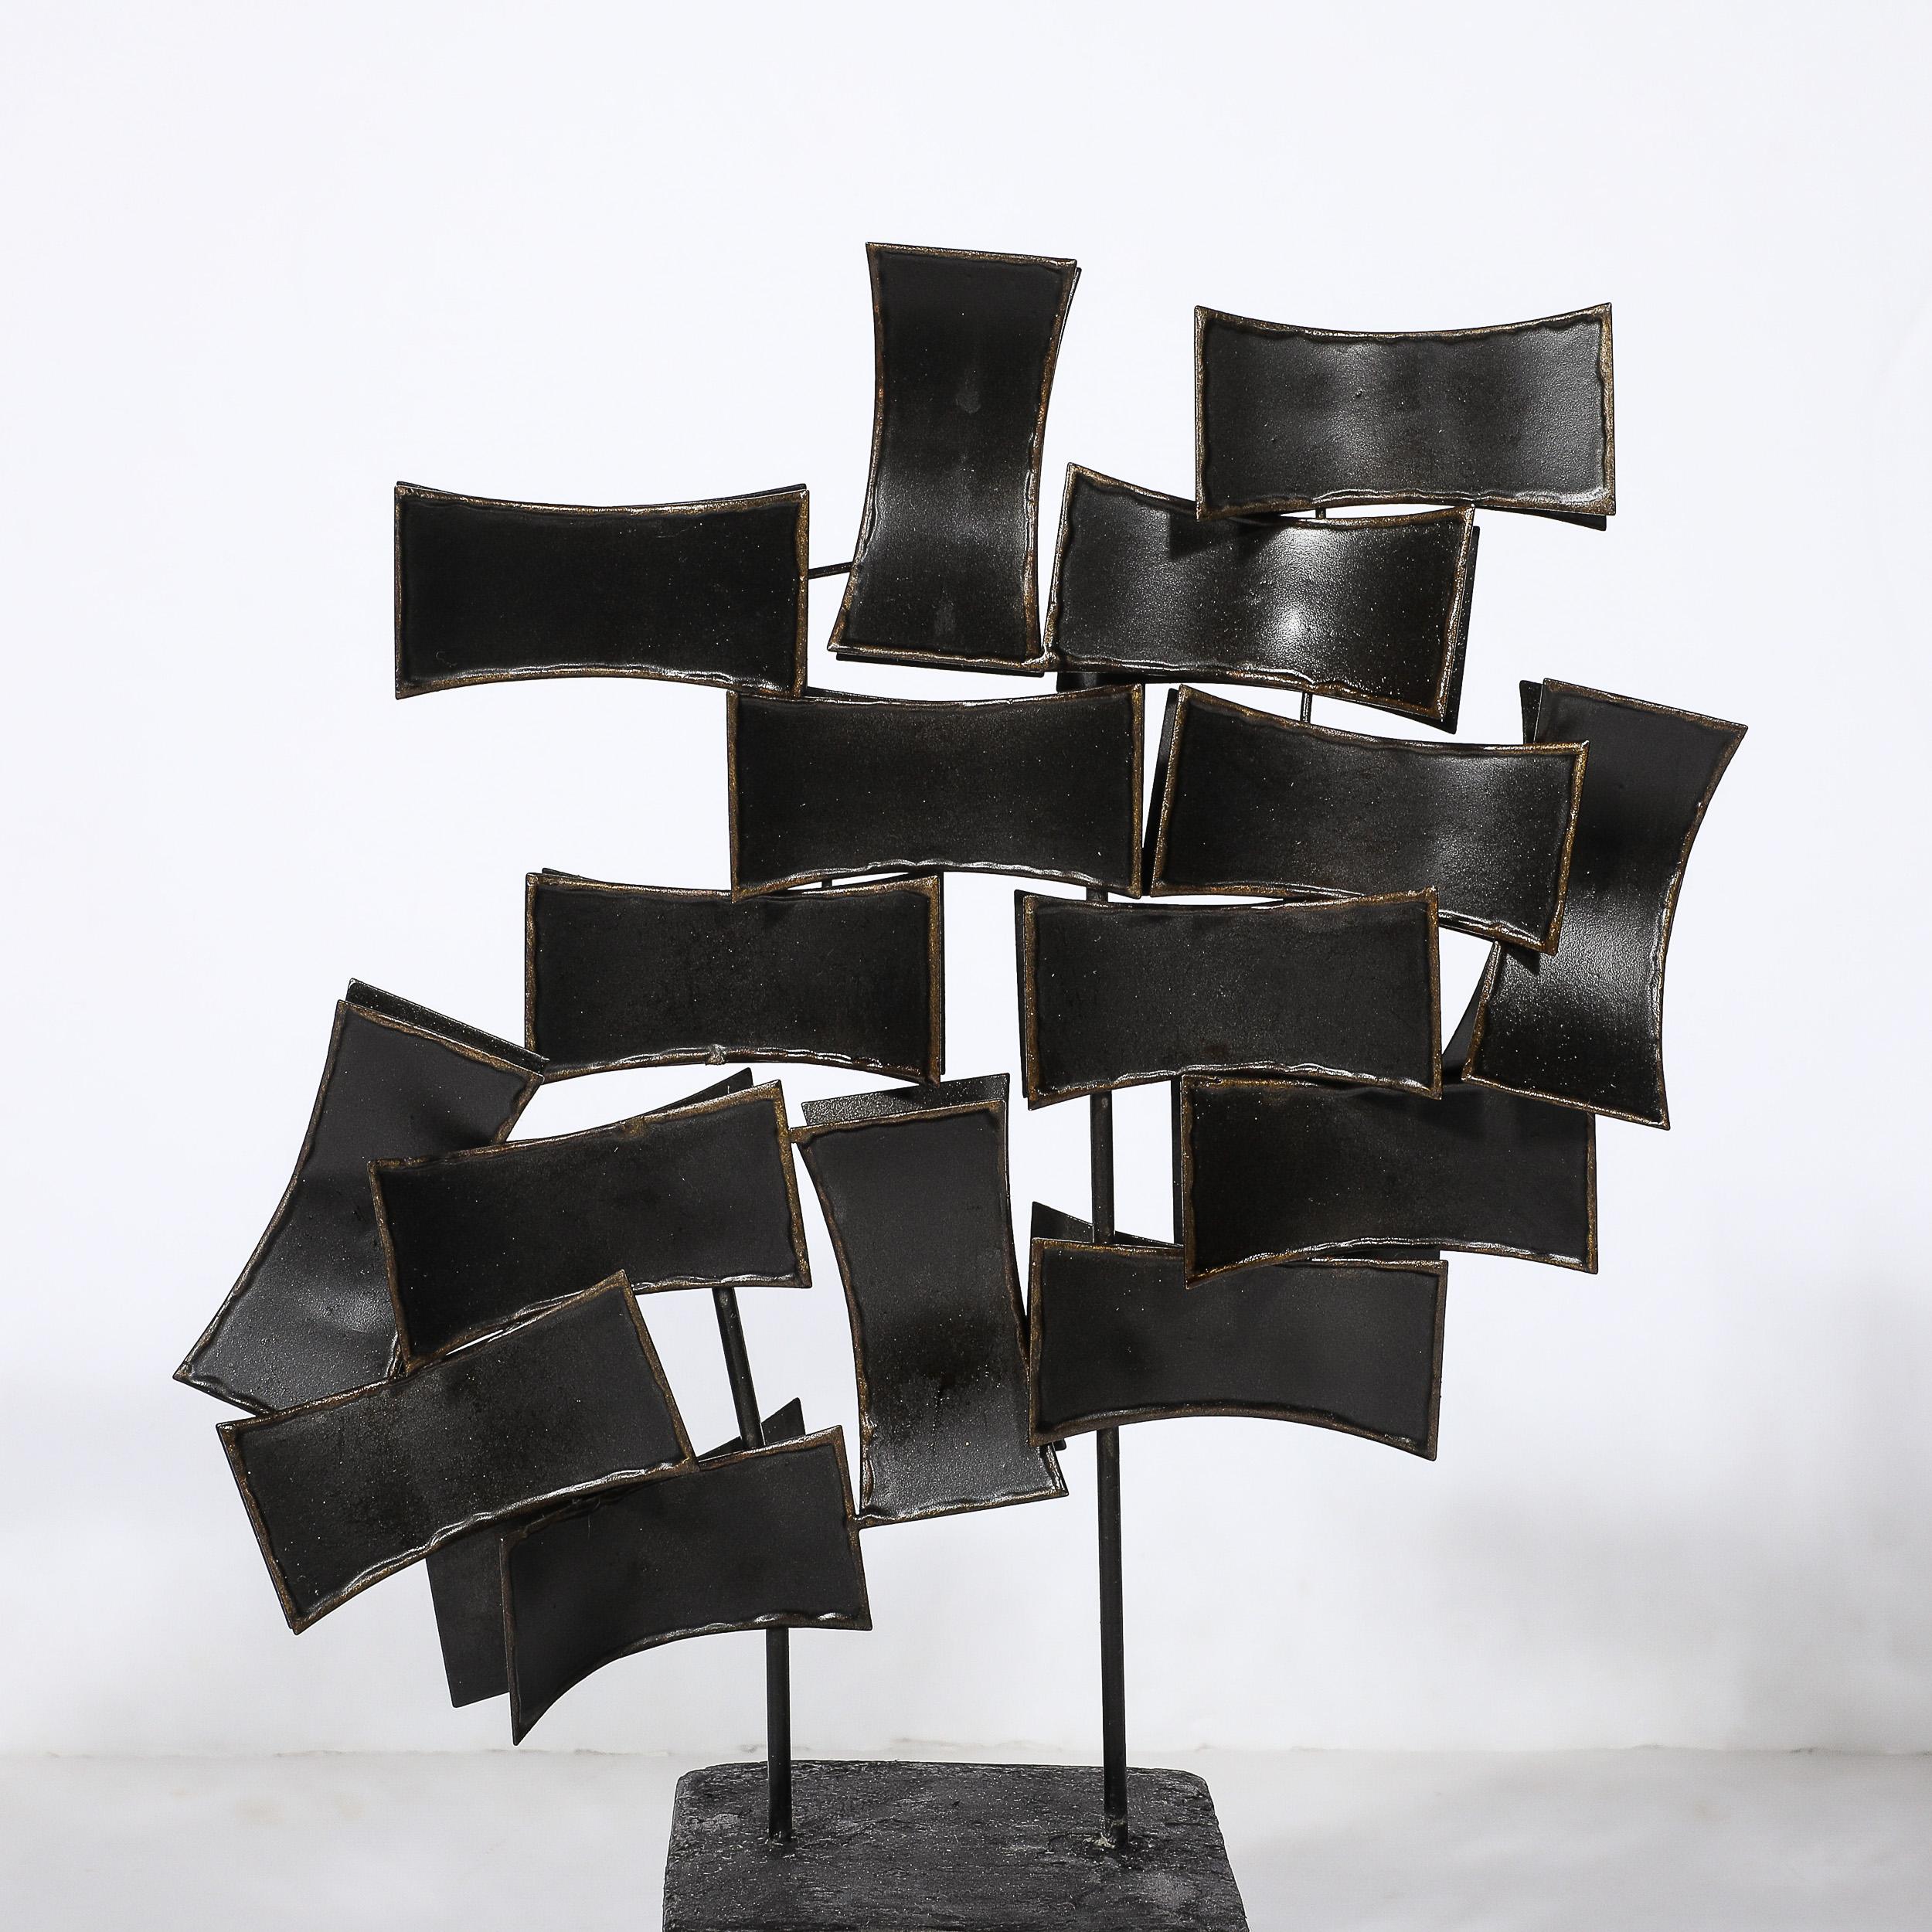 Américain Sculpture abstraite brutaliste du milieu du siècle en bronze taillé, à la manière de Curtis Jeré